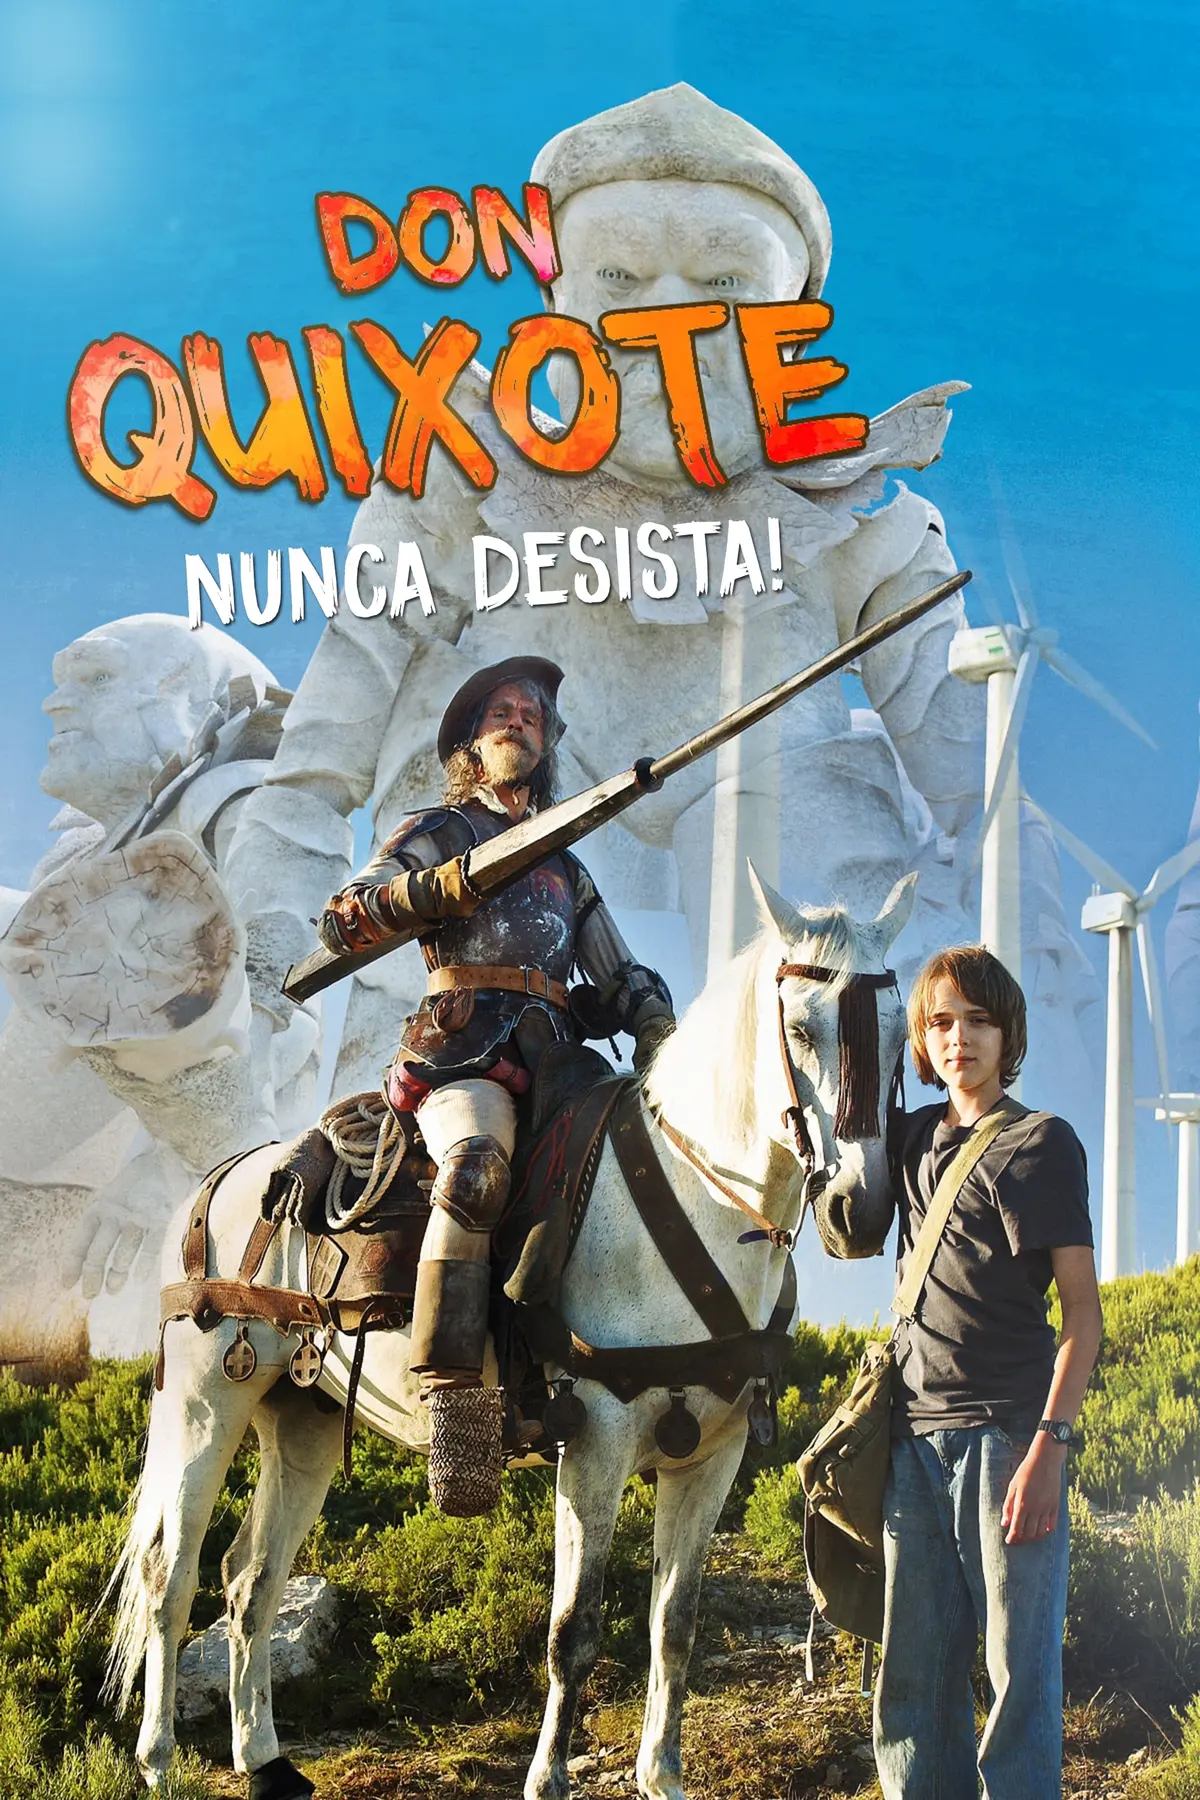 Don Quichotte ne rennonce jamais !